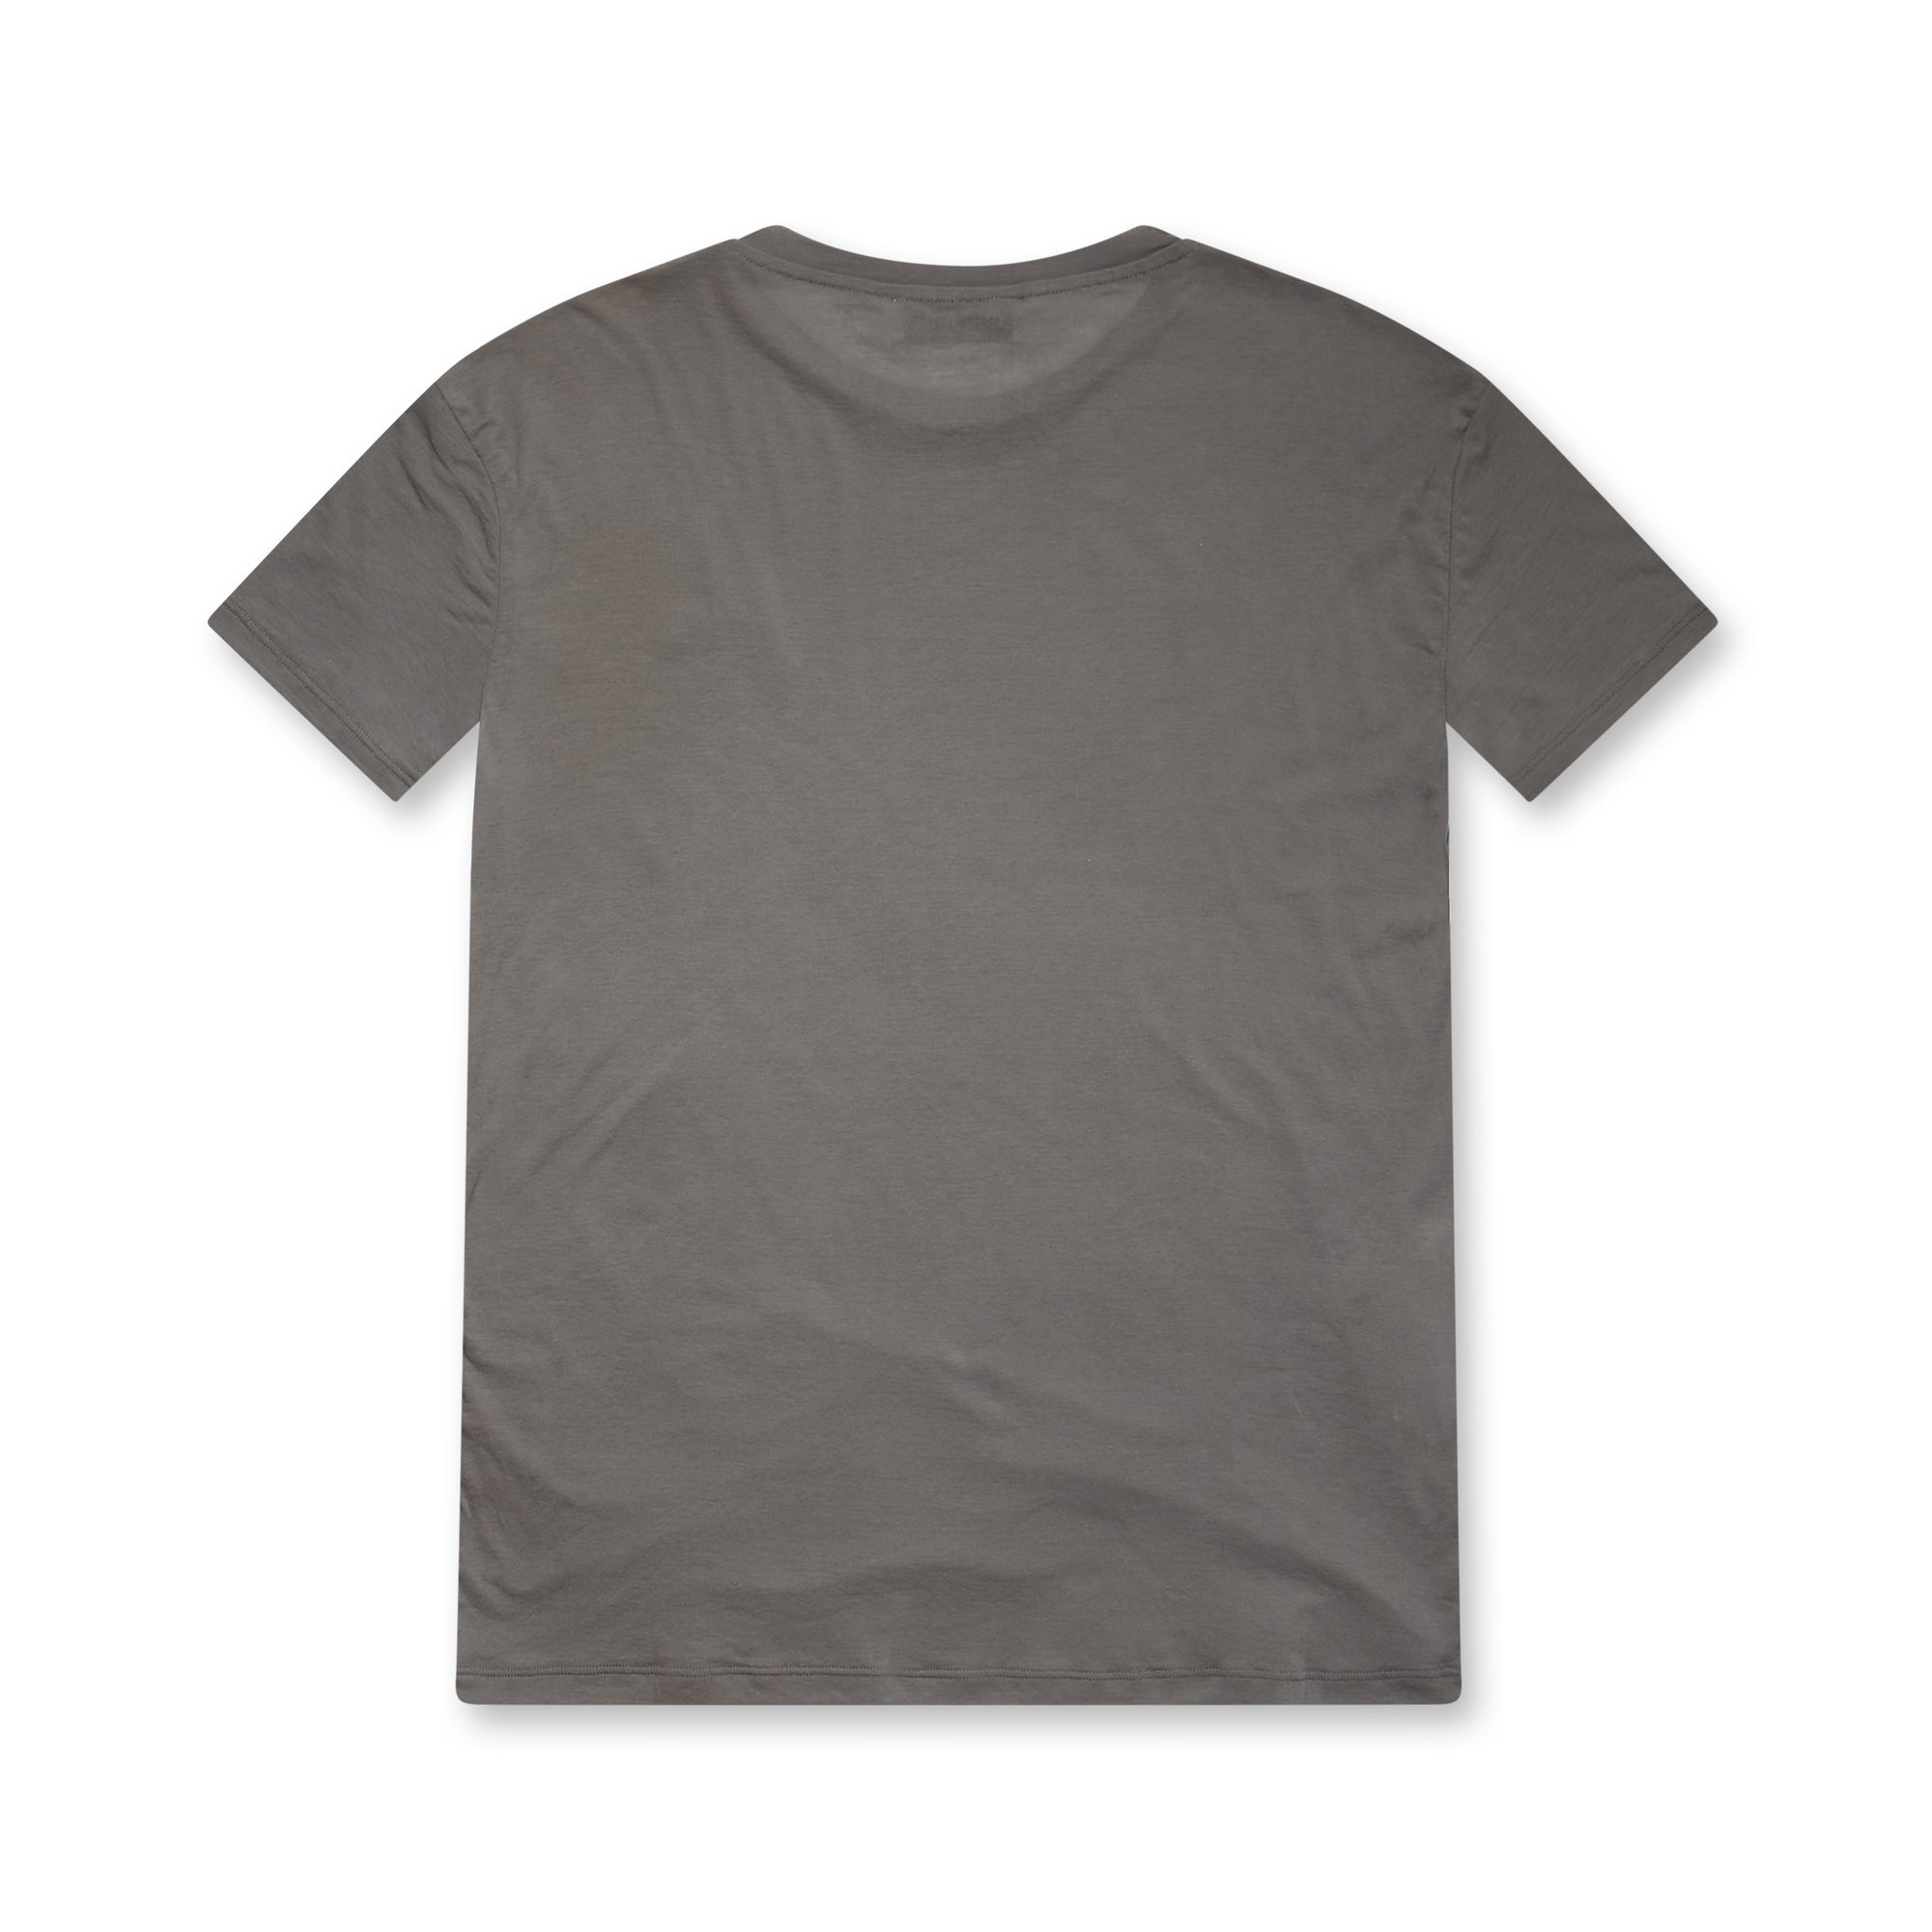 Miu Miu - Women’s Garment-dyed T-shirt - (Lead Grey) view 2